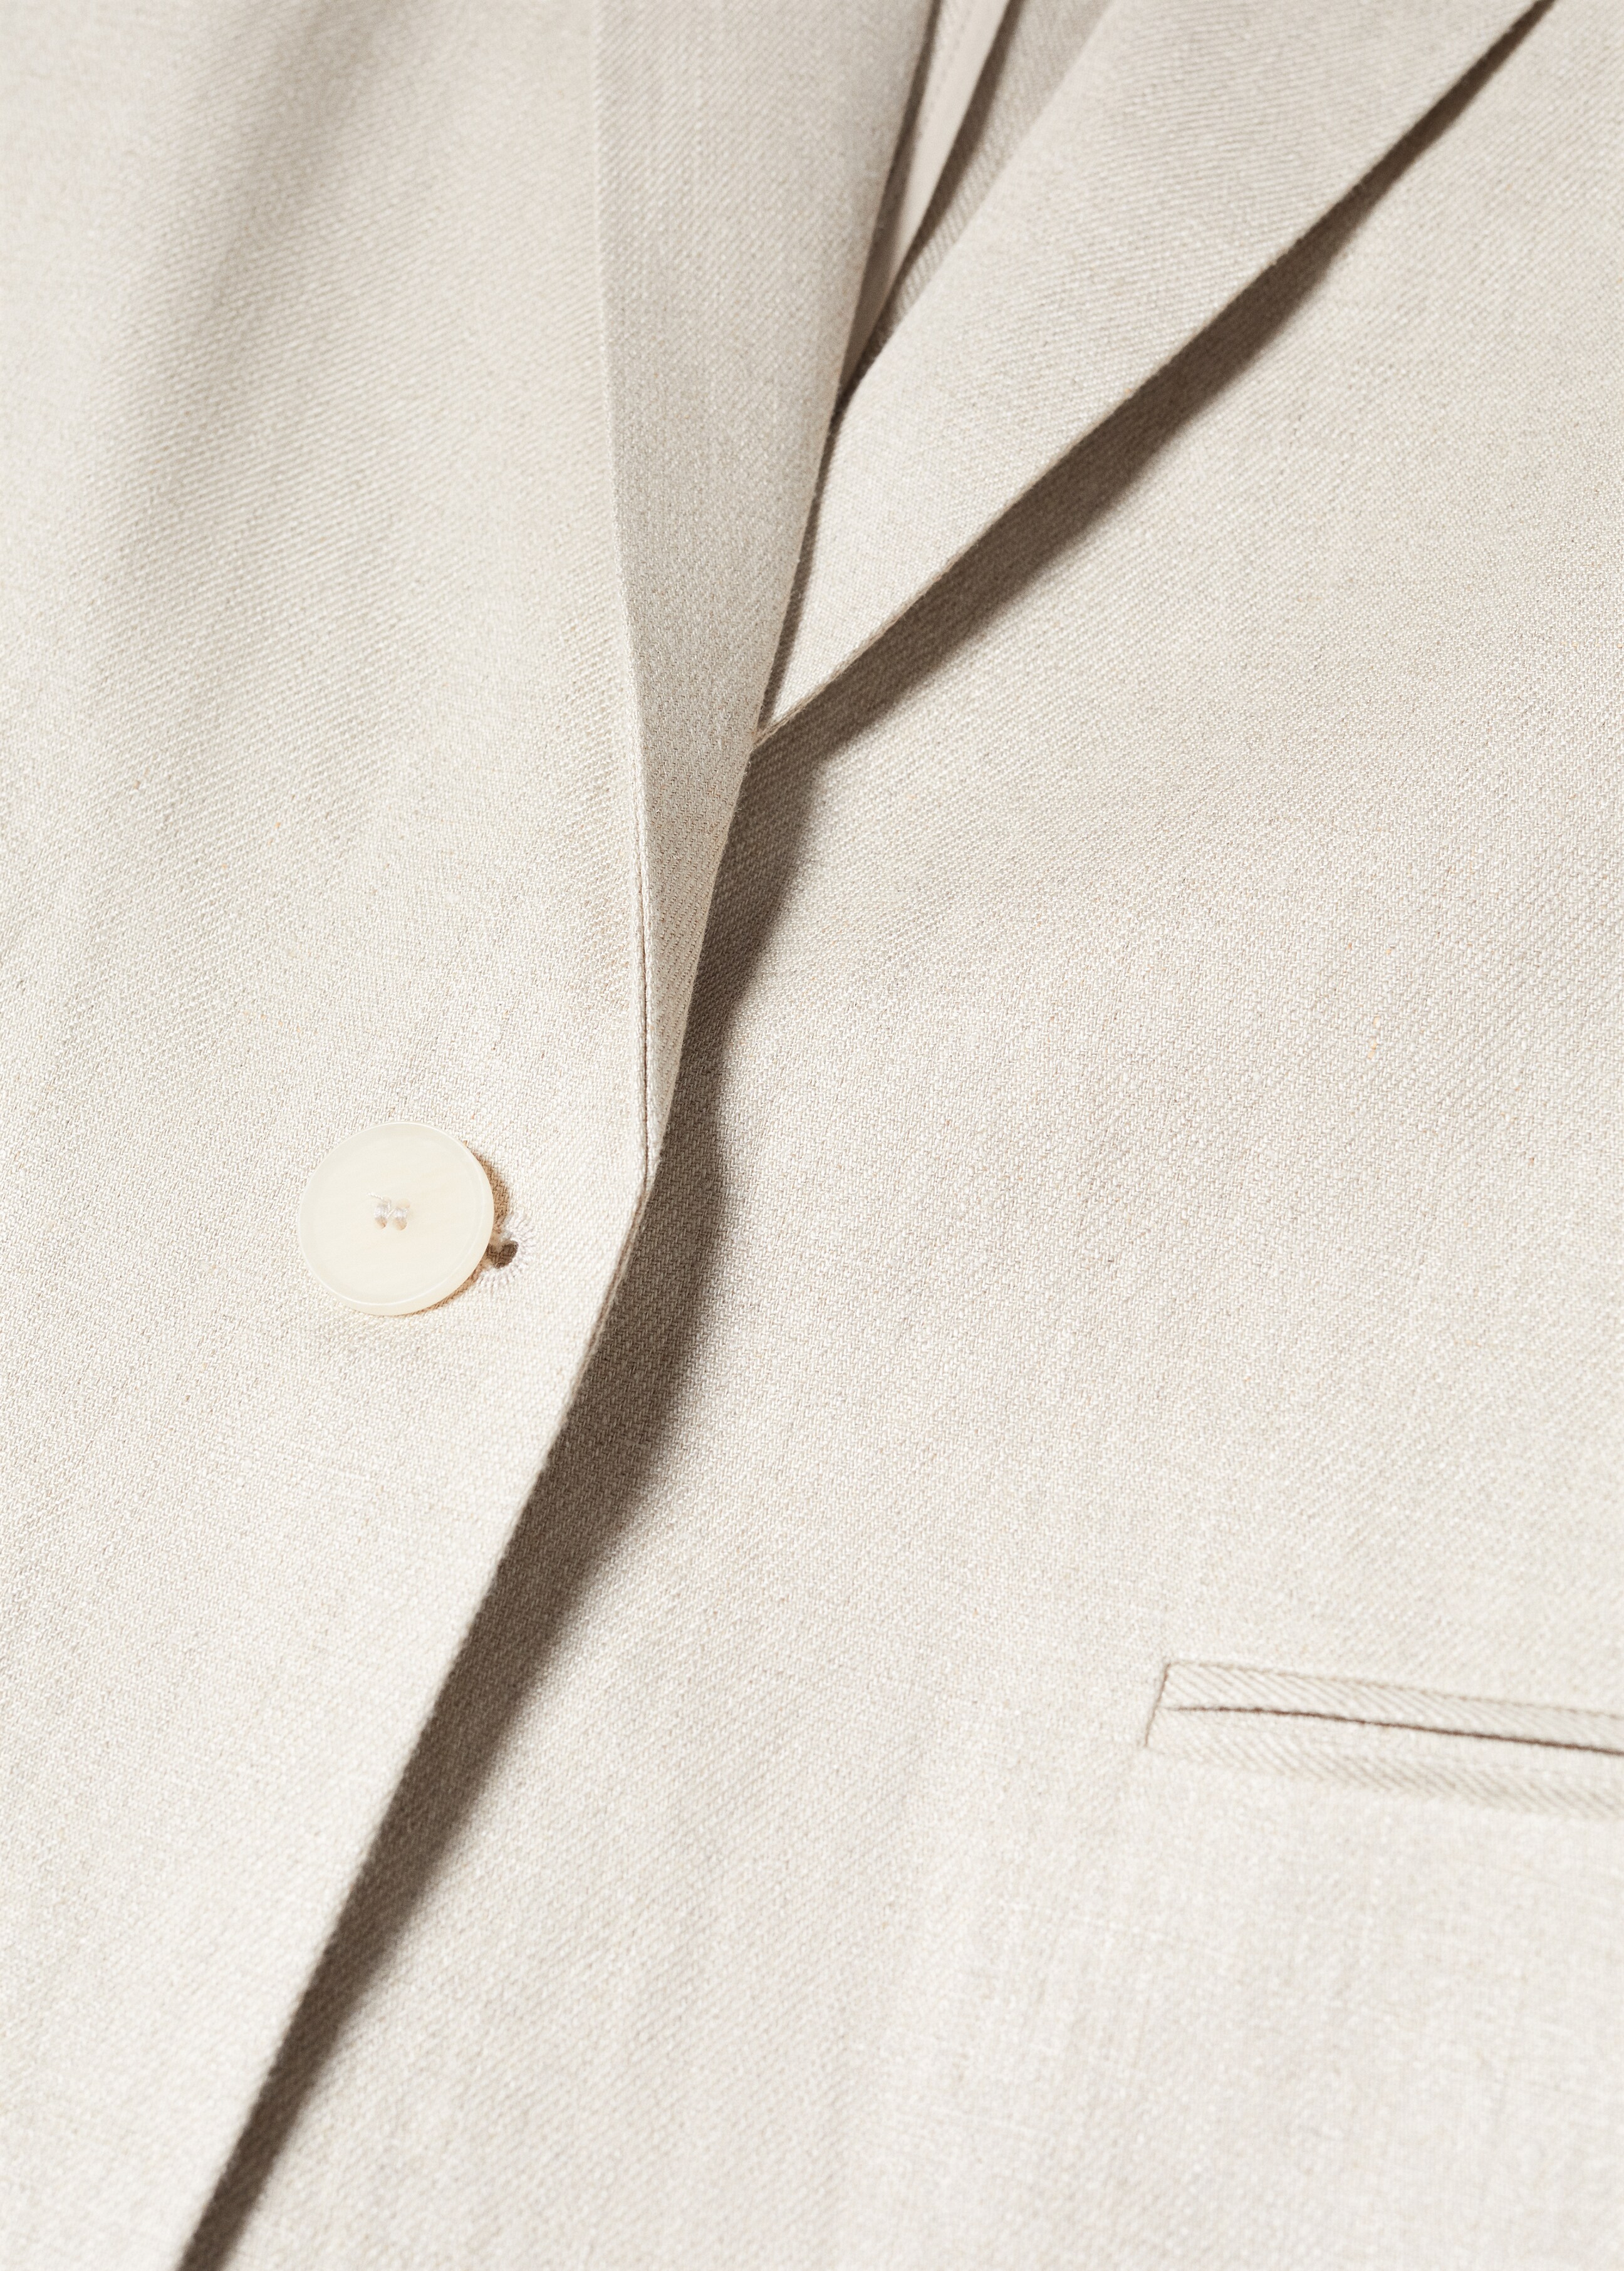 Linen blazer suit - Details of the article 8